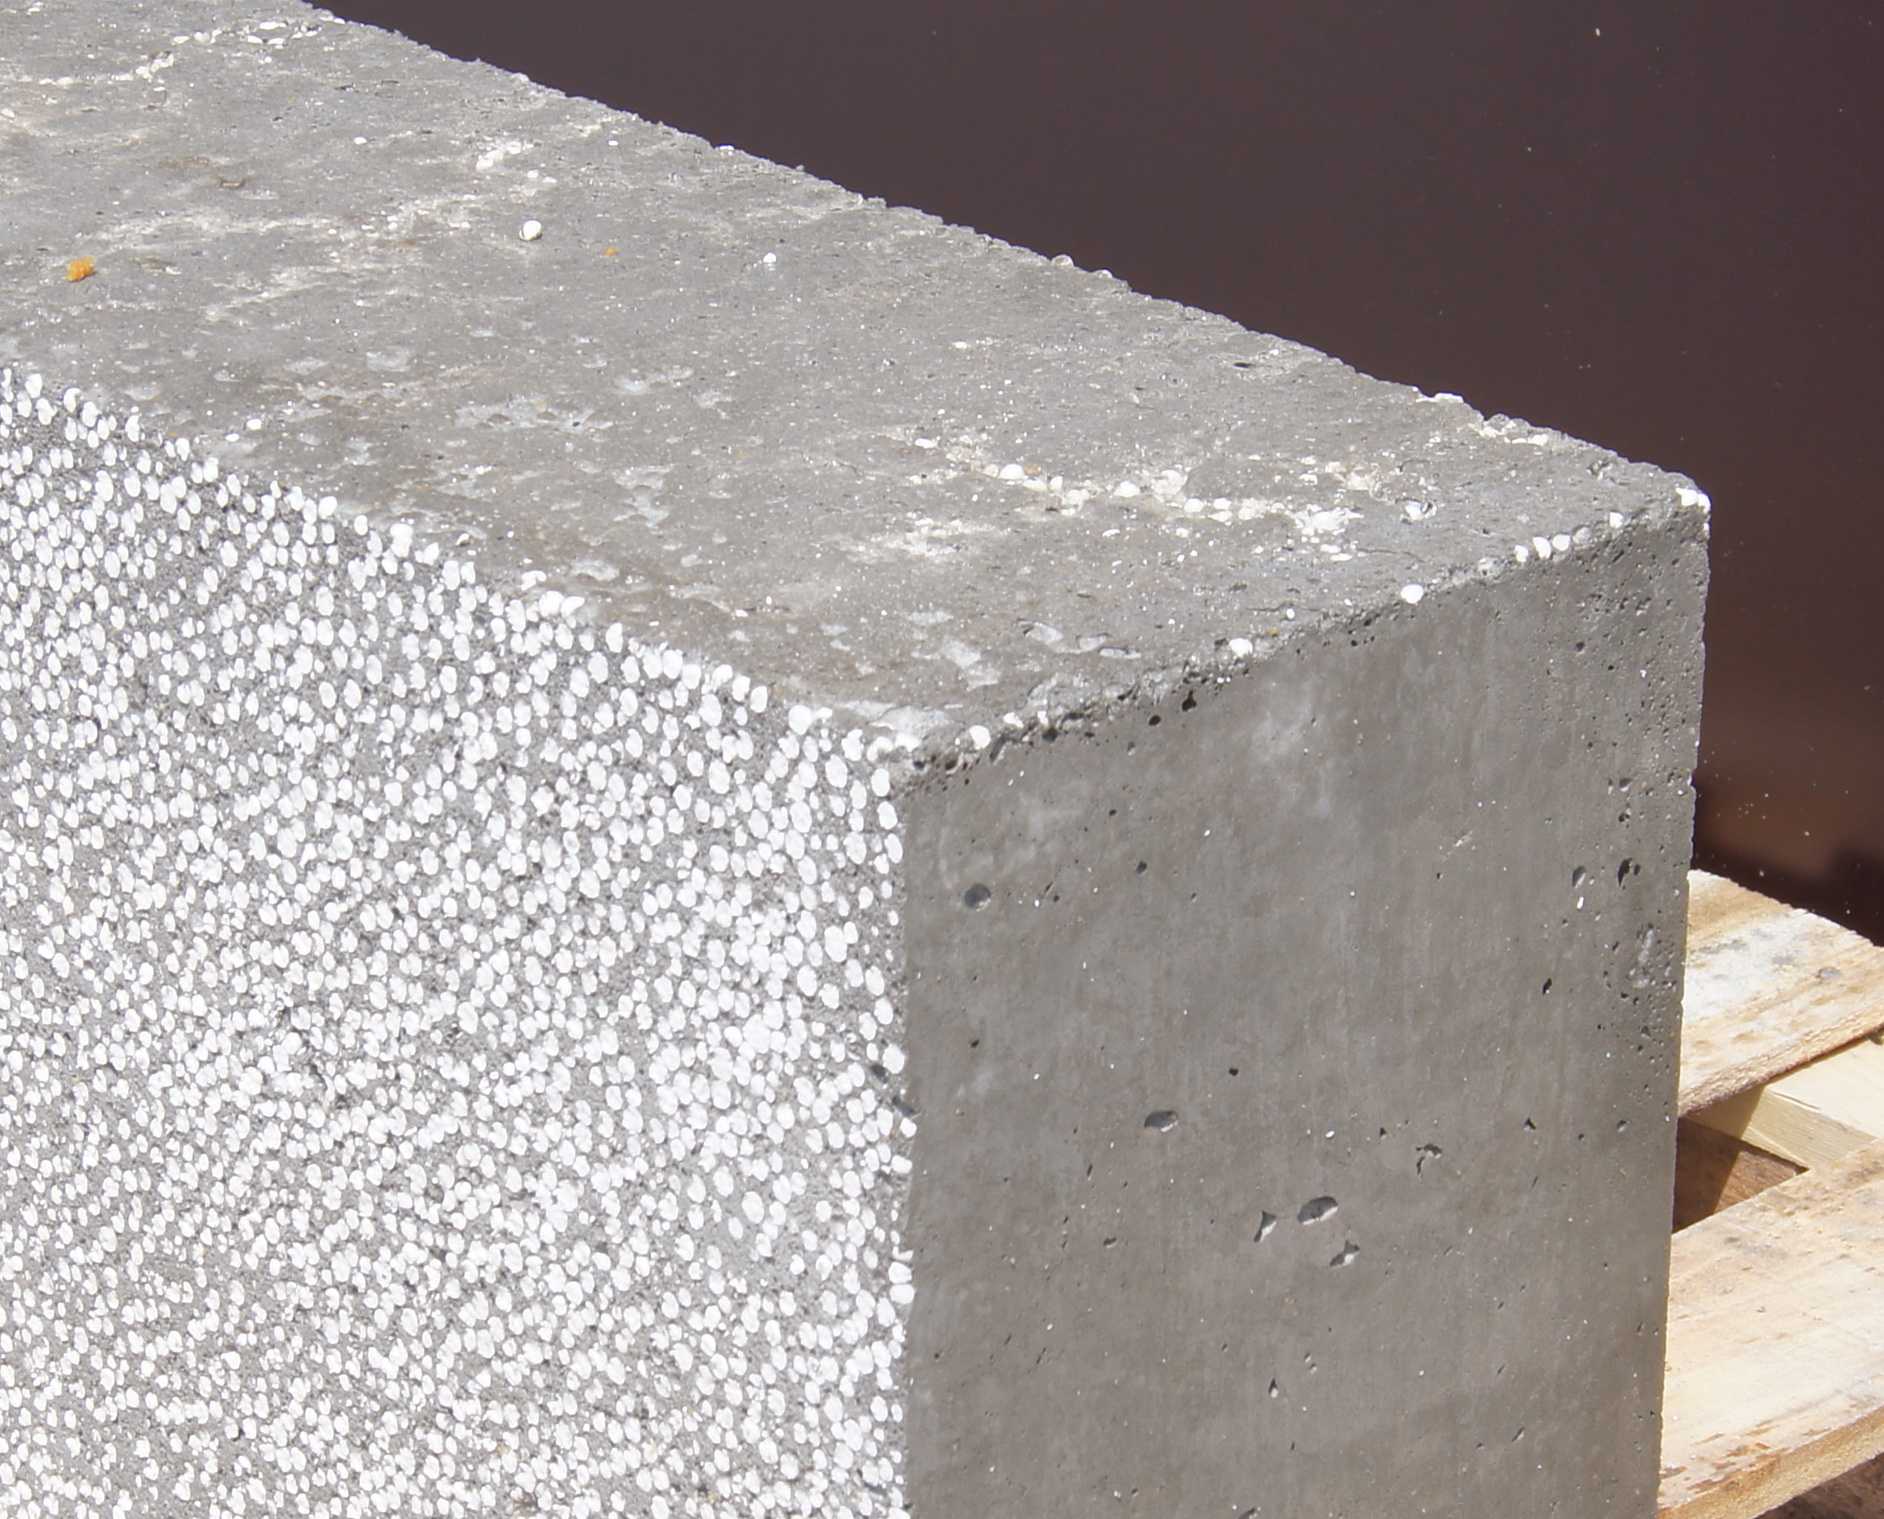 Облегчённый бетон своими руками: состав и свойства – бетонпедия